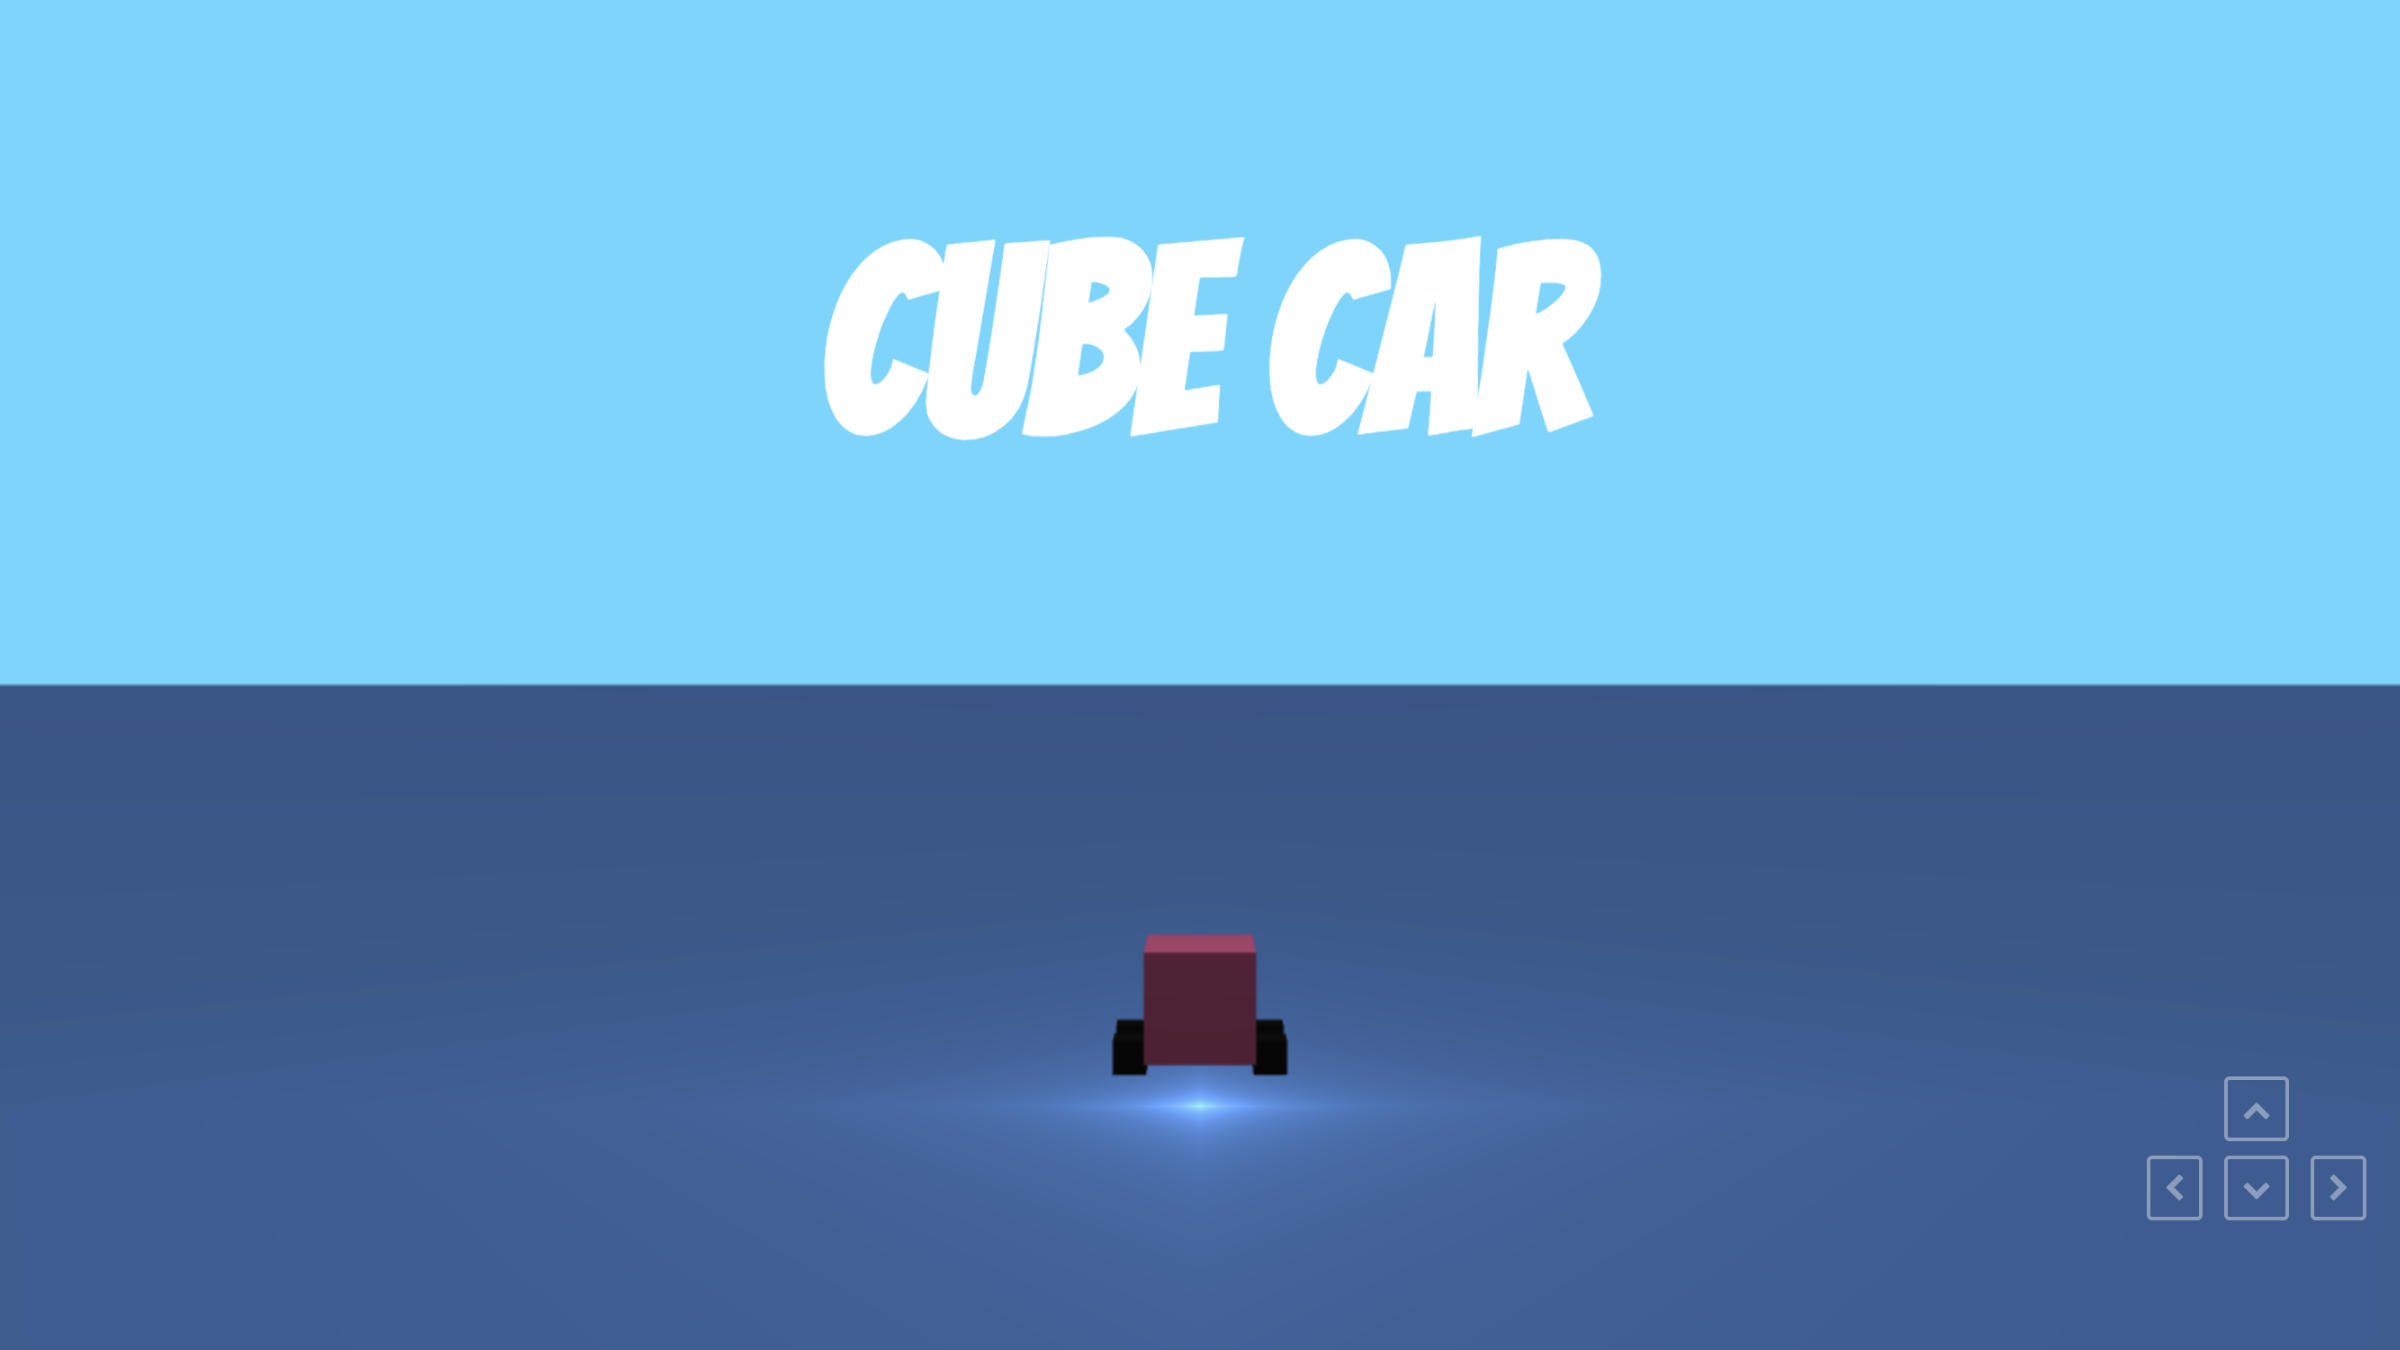 Cube Car by Xander Gottlieb